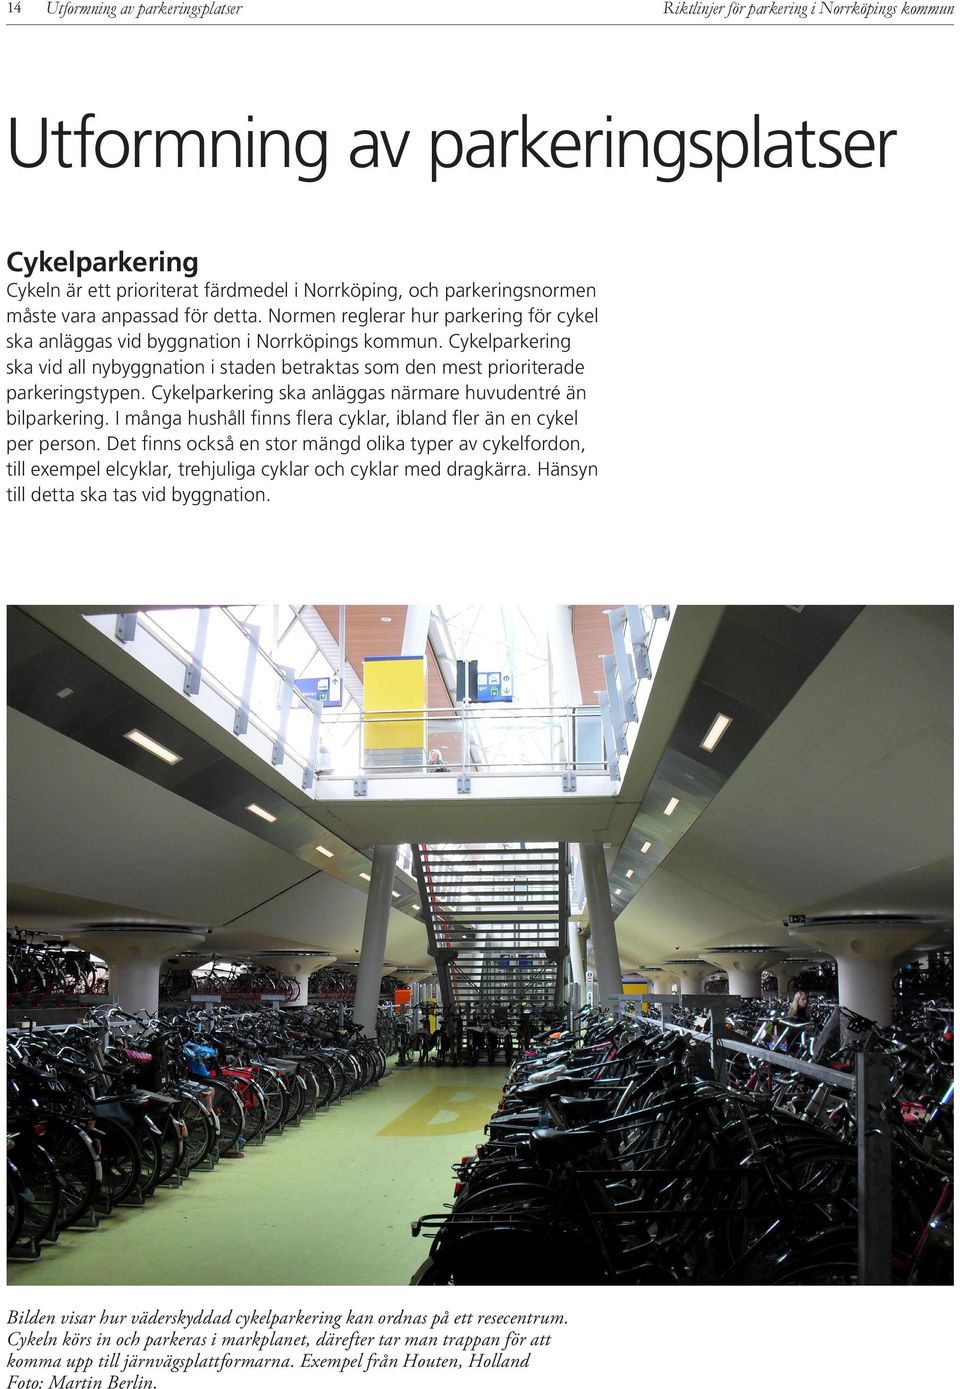 Cykelparkering ska vid all nybyggnation i staden betraktas som den mest prioriterade parkeringstypen. Cykelparkering ska anläggas närmare huvudentré än bilparkering.